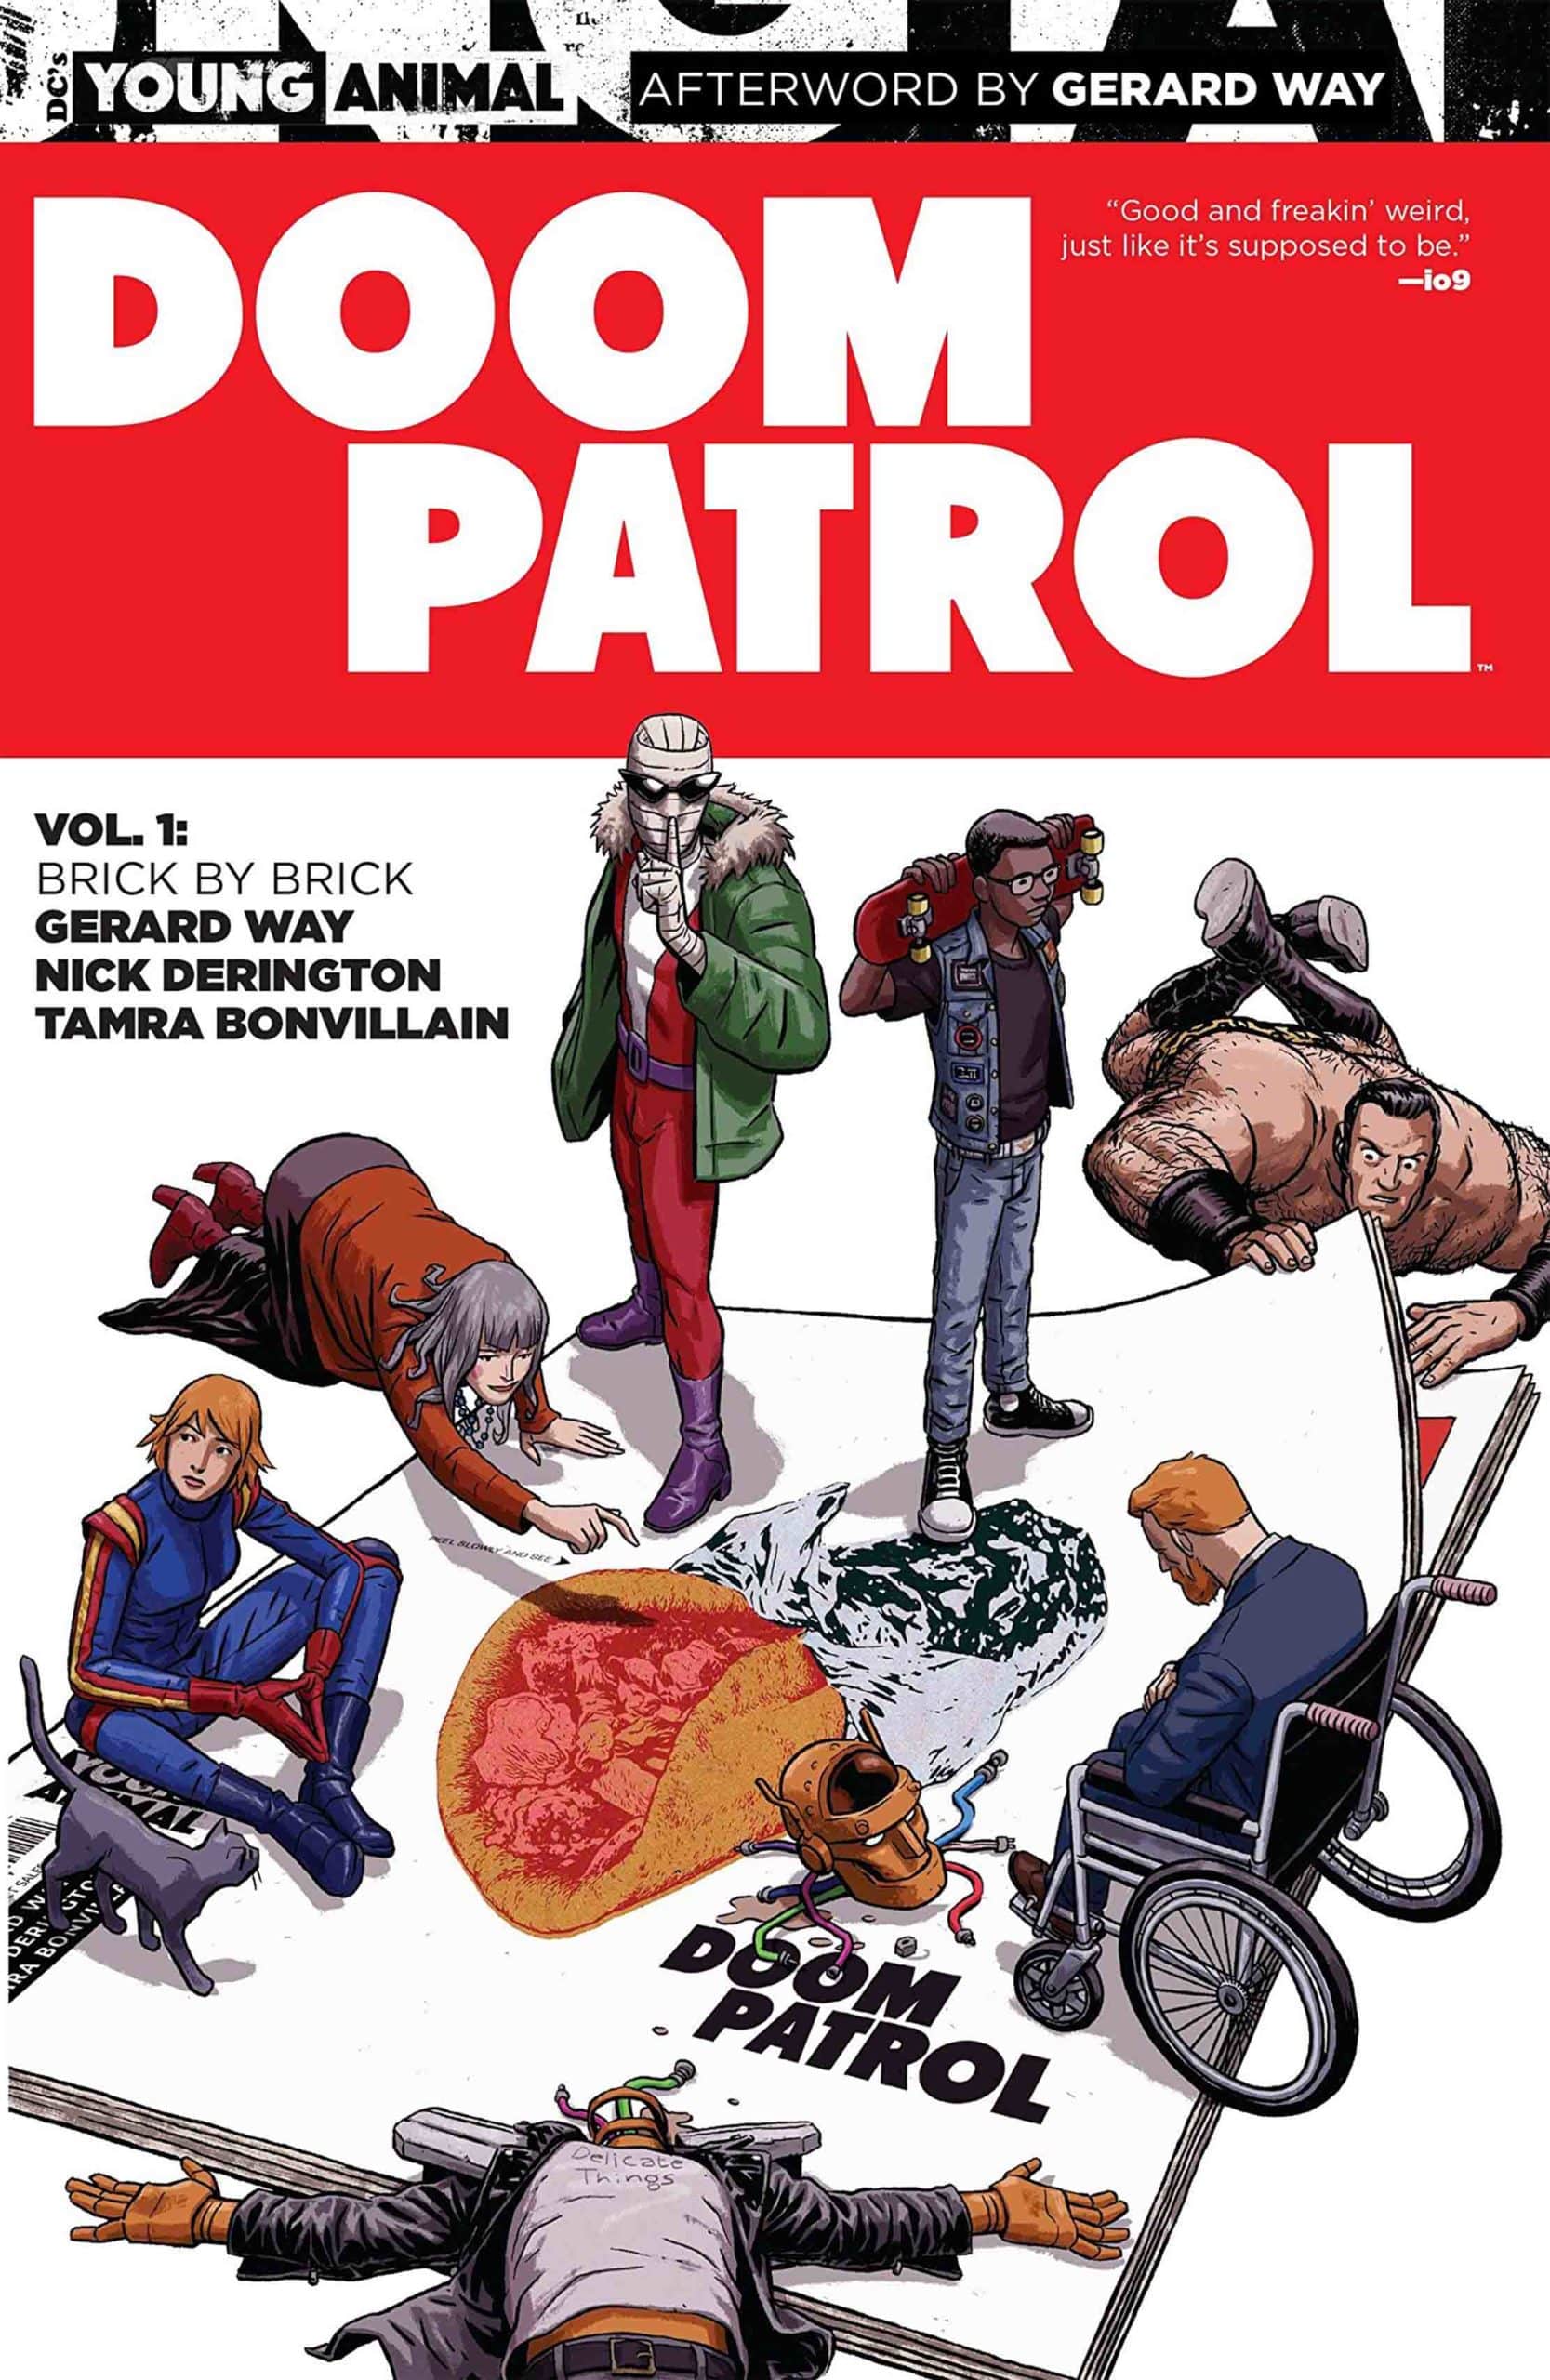 Doom Patrol Comics and TV Show